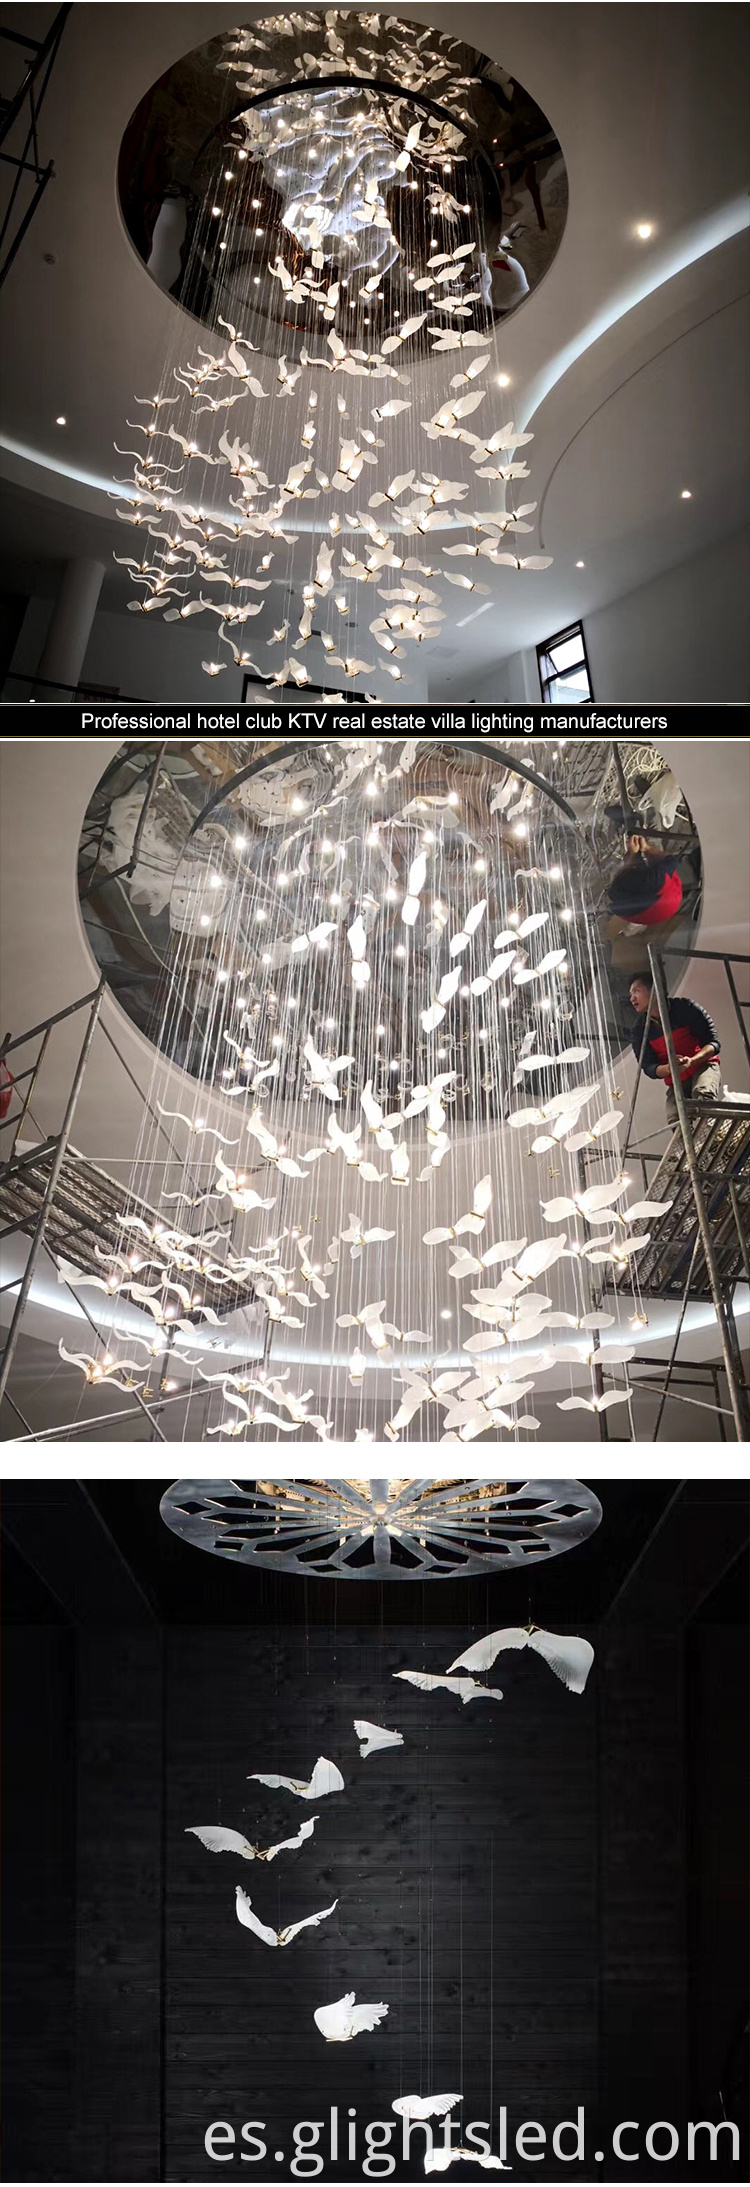 Iluminación decorativa de hotel de estilo nórdico cristal